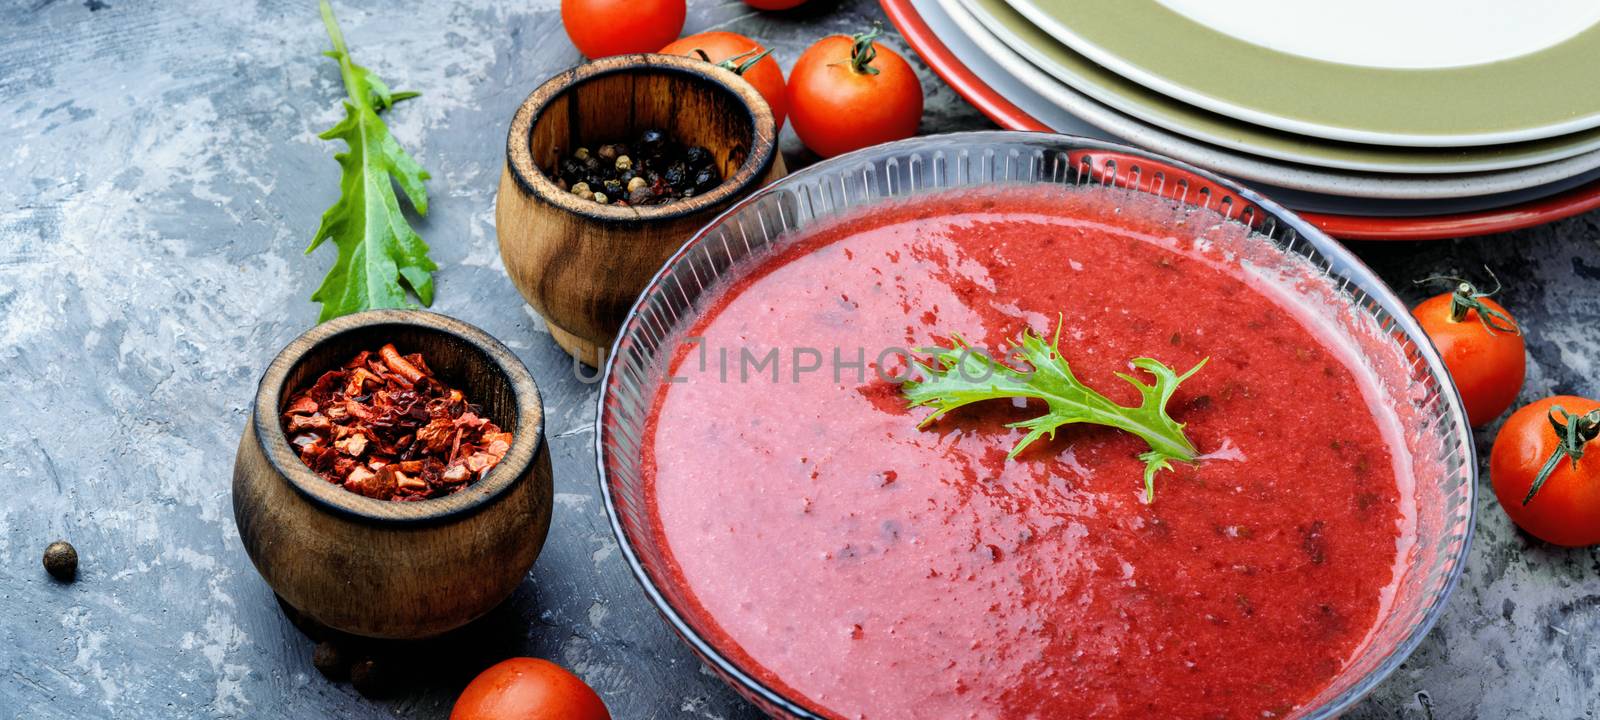 Tomato gazpacho soup by LMykola